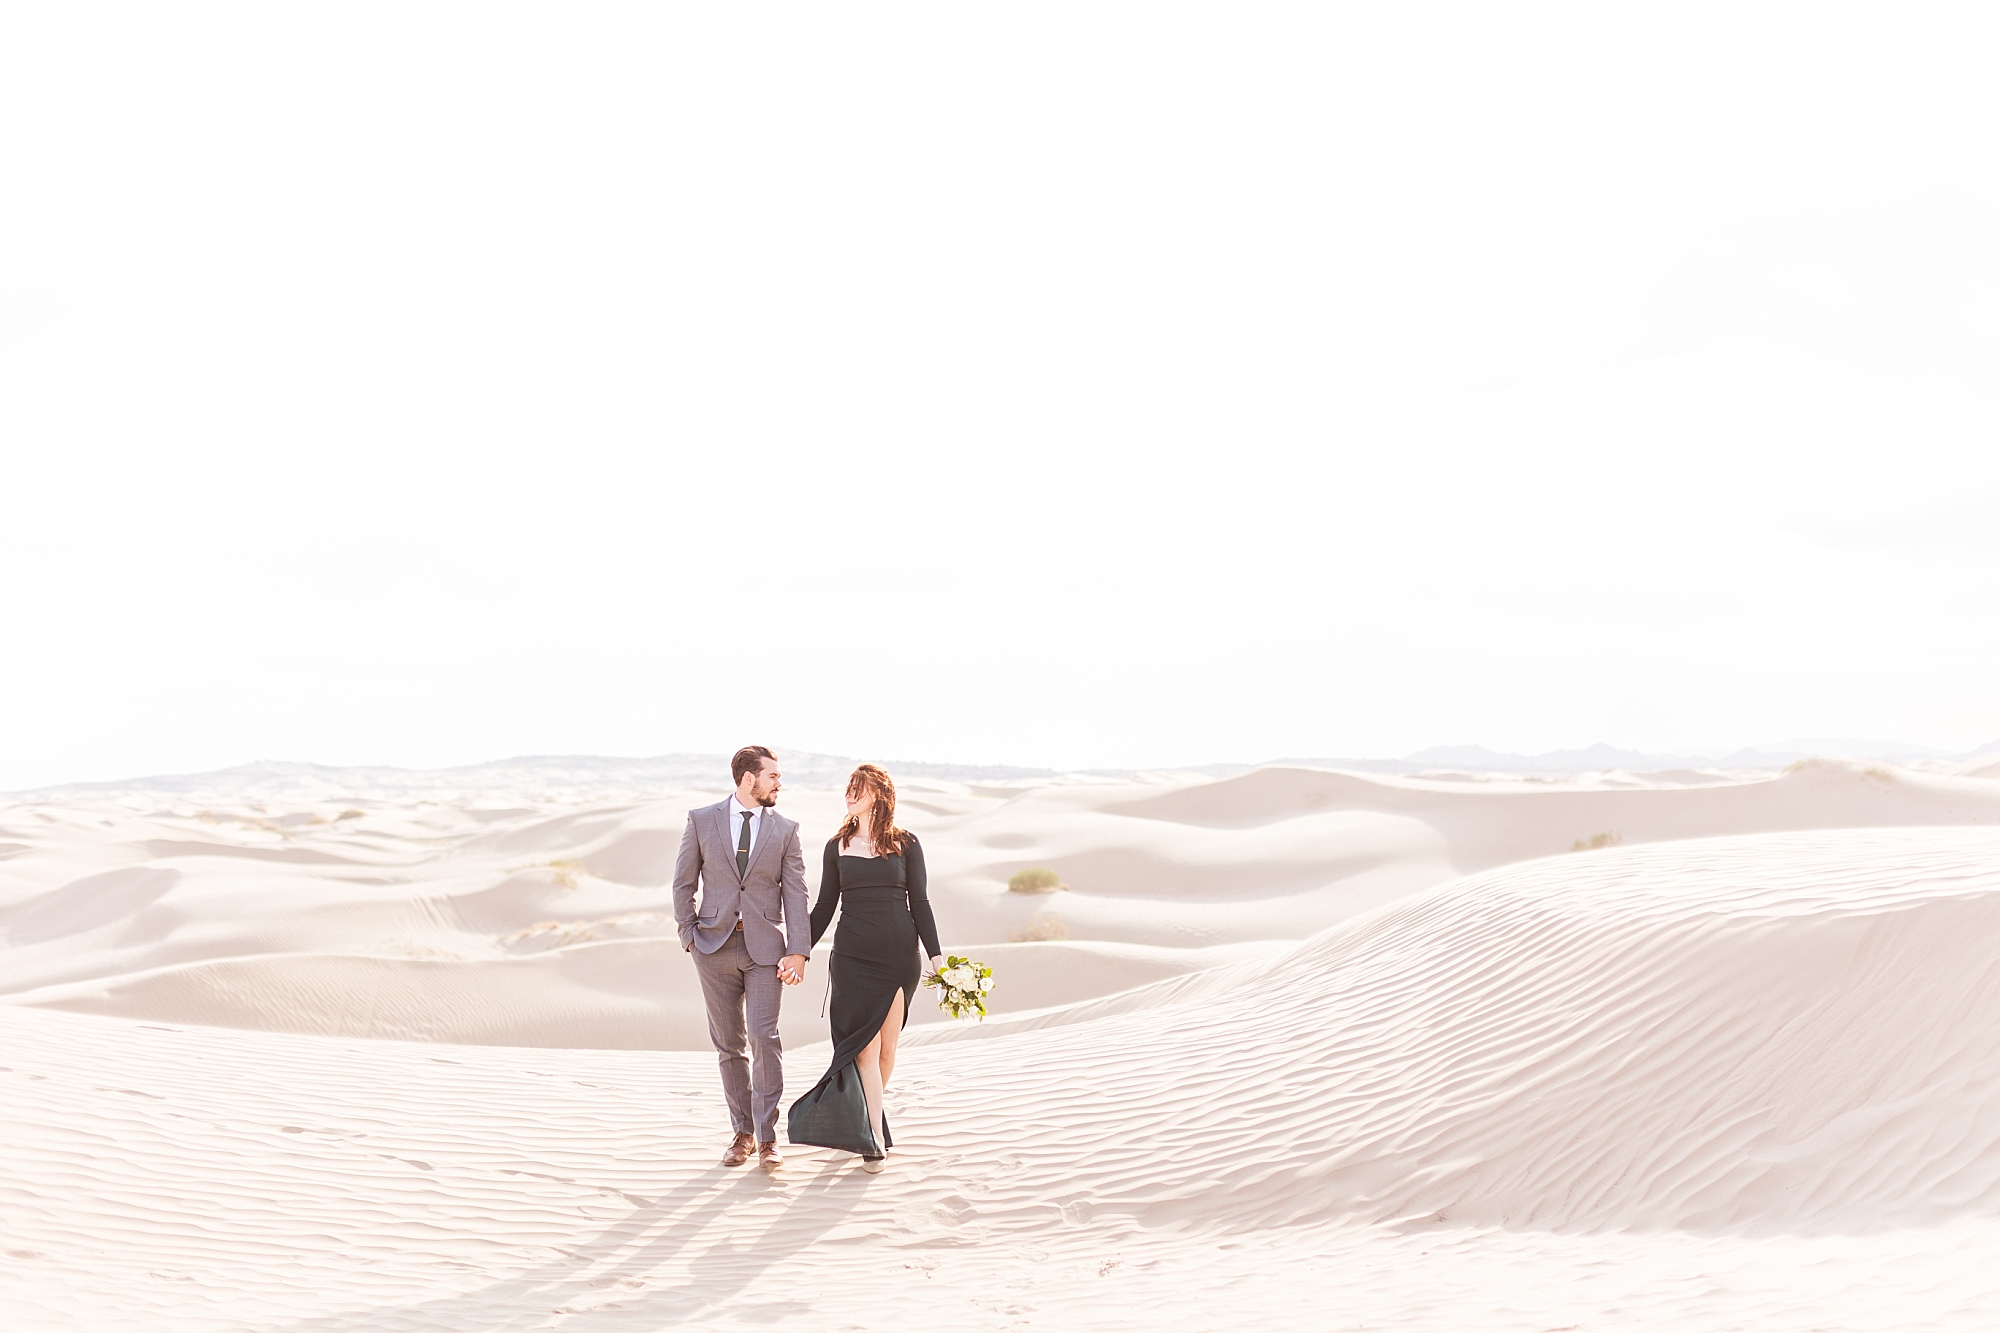 Engagement session at the Little Sahara Desert in Utah